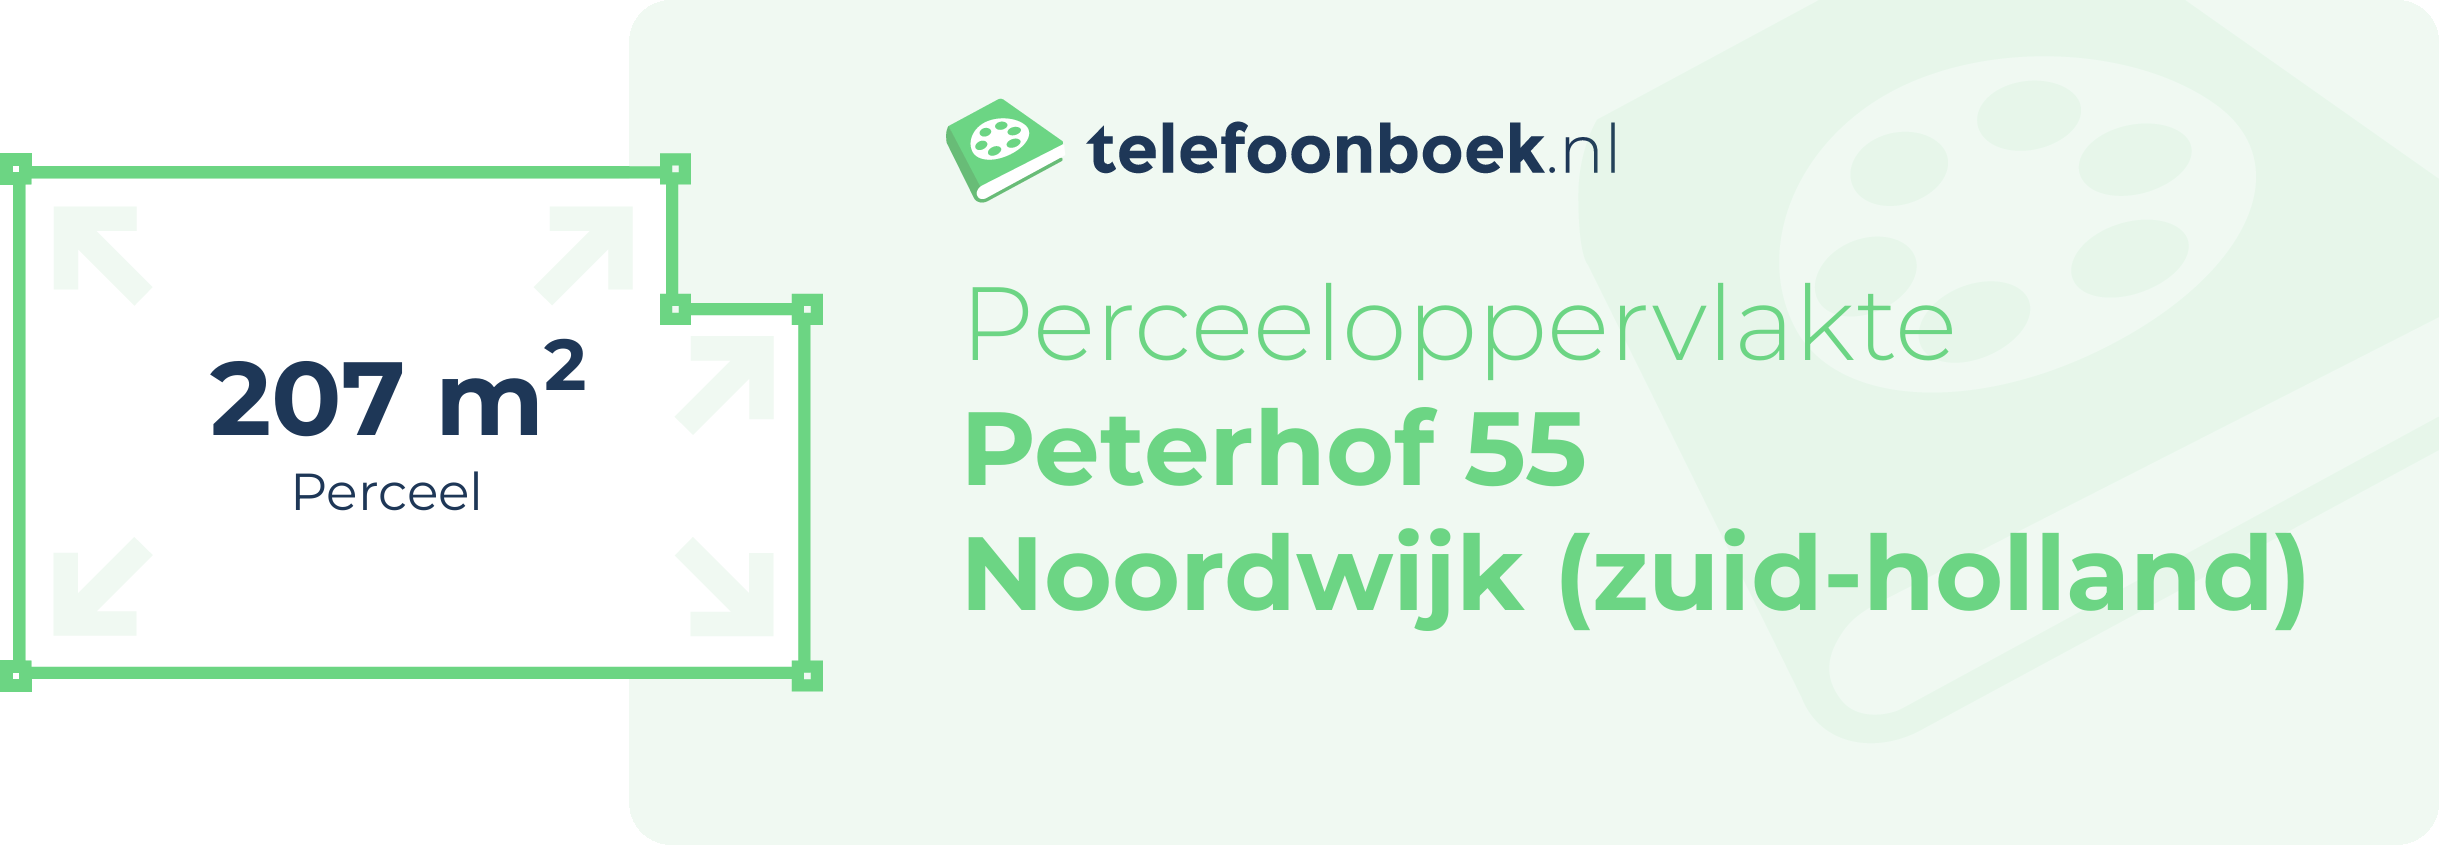 Perceeloppervlakte Peterhof 55 Noordwijk (Zuid-Holland)